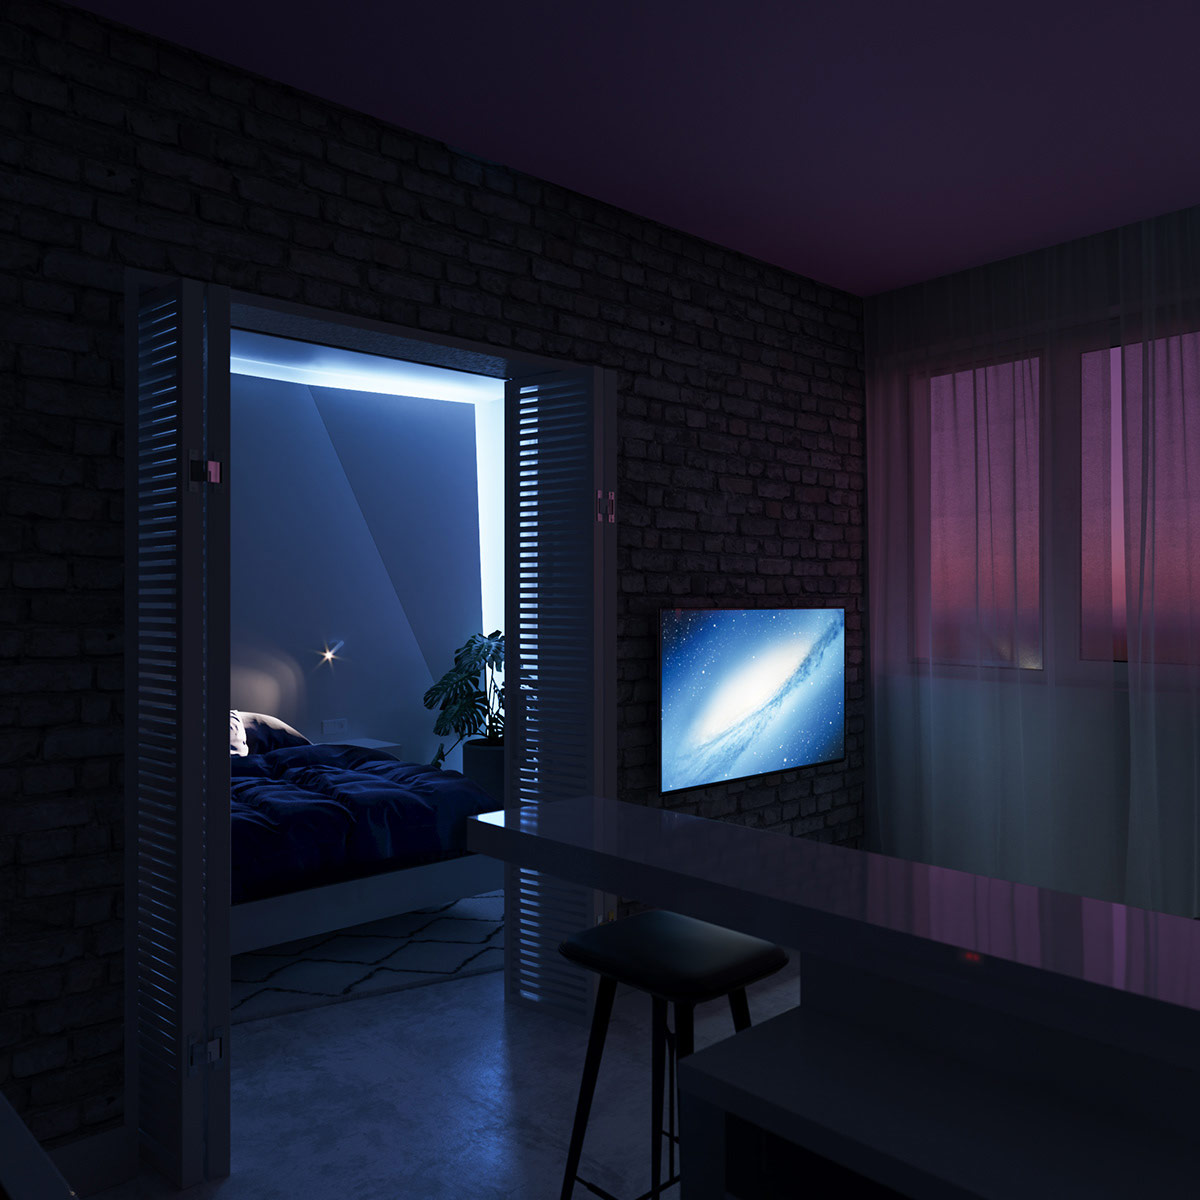 khung cảnh bên trong căn hộ về đêm với ánh đèn màu tím, xanh huyền ảo